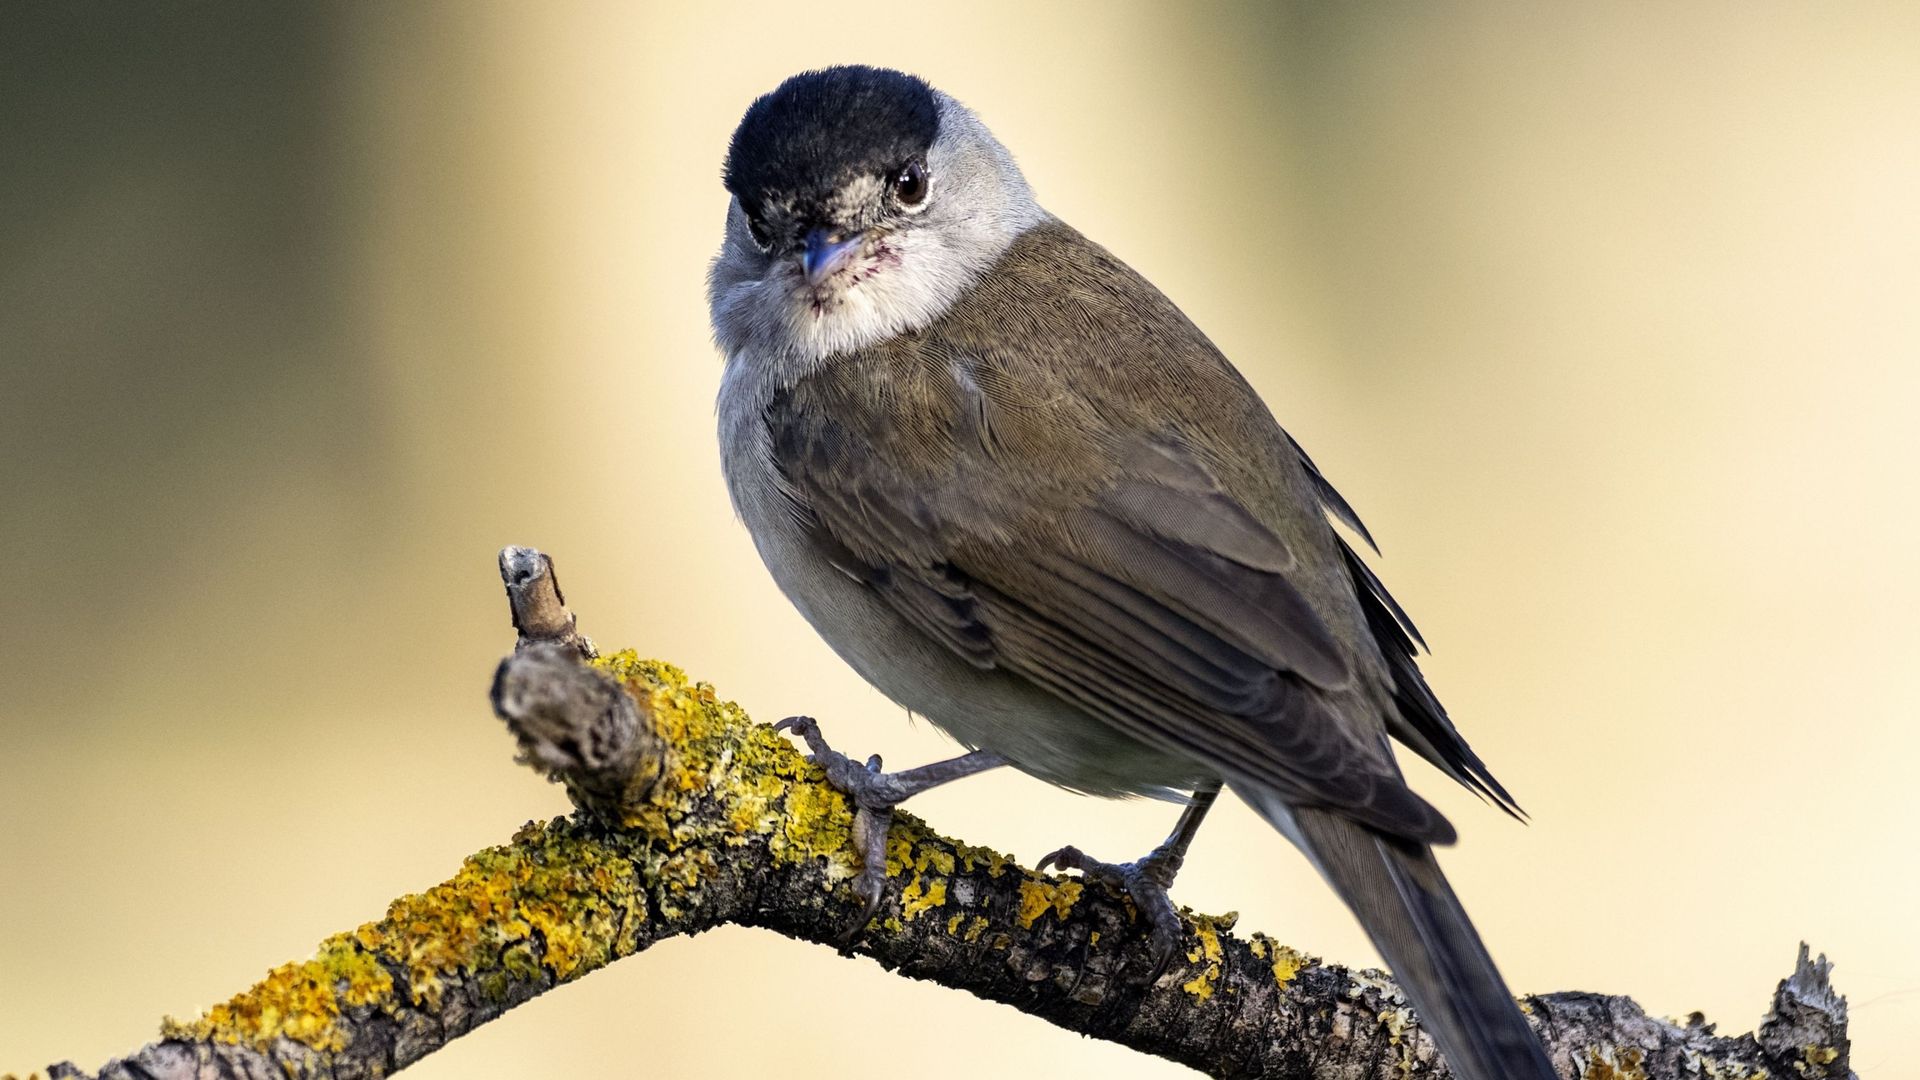 5 bienfaits de l'observation d'oiseaux pour la santé